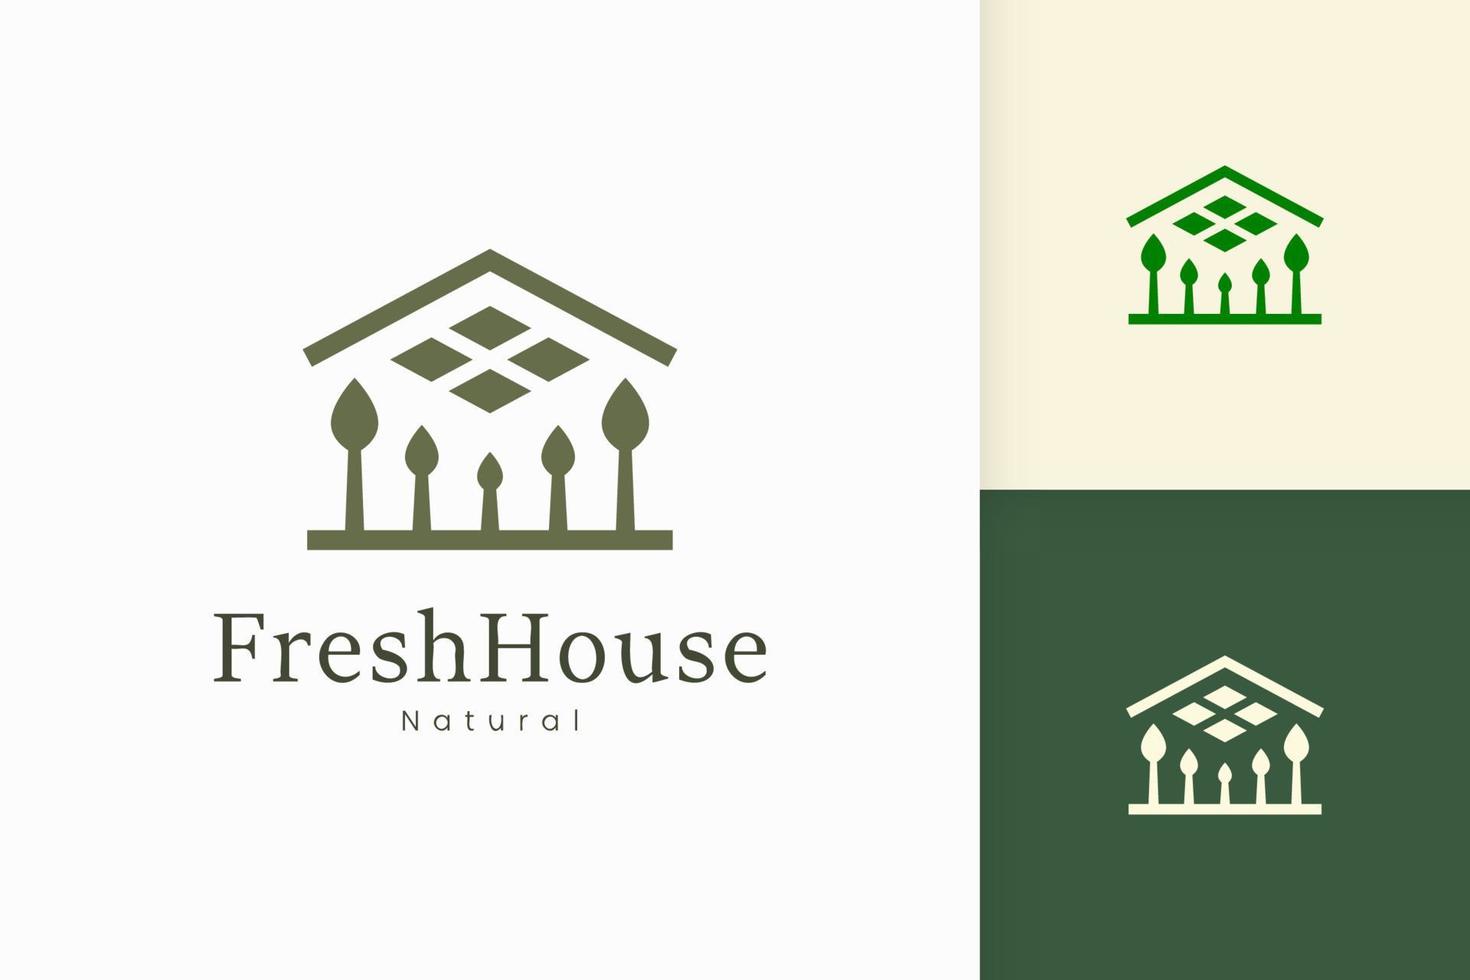 logo de maison verte nature avec forme d'arbre et de feuille vecteur